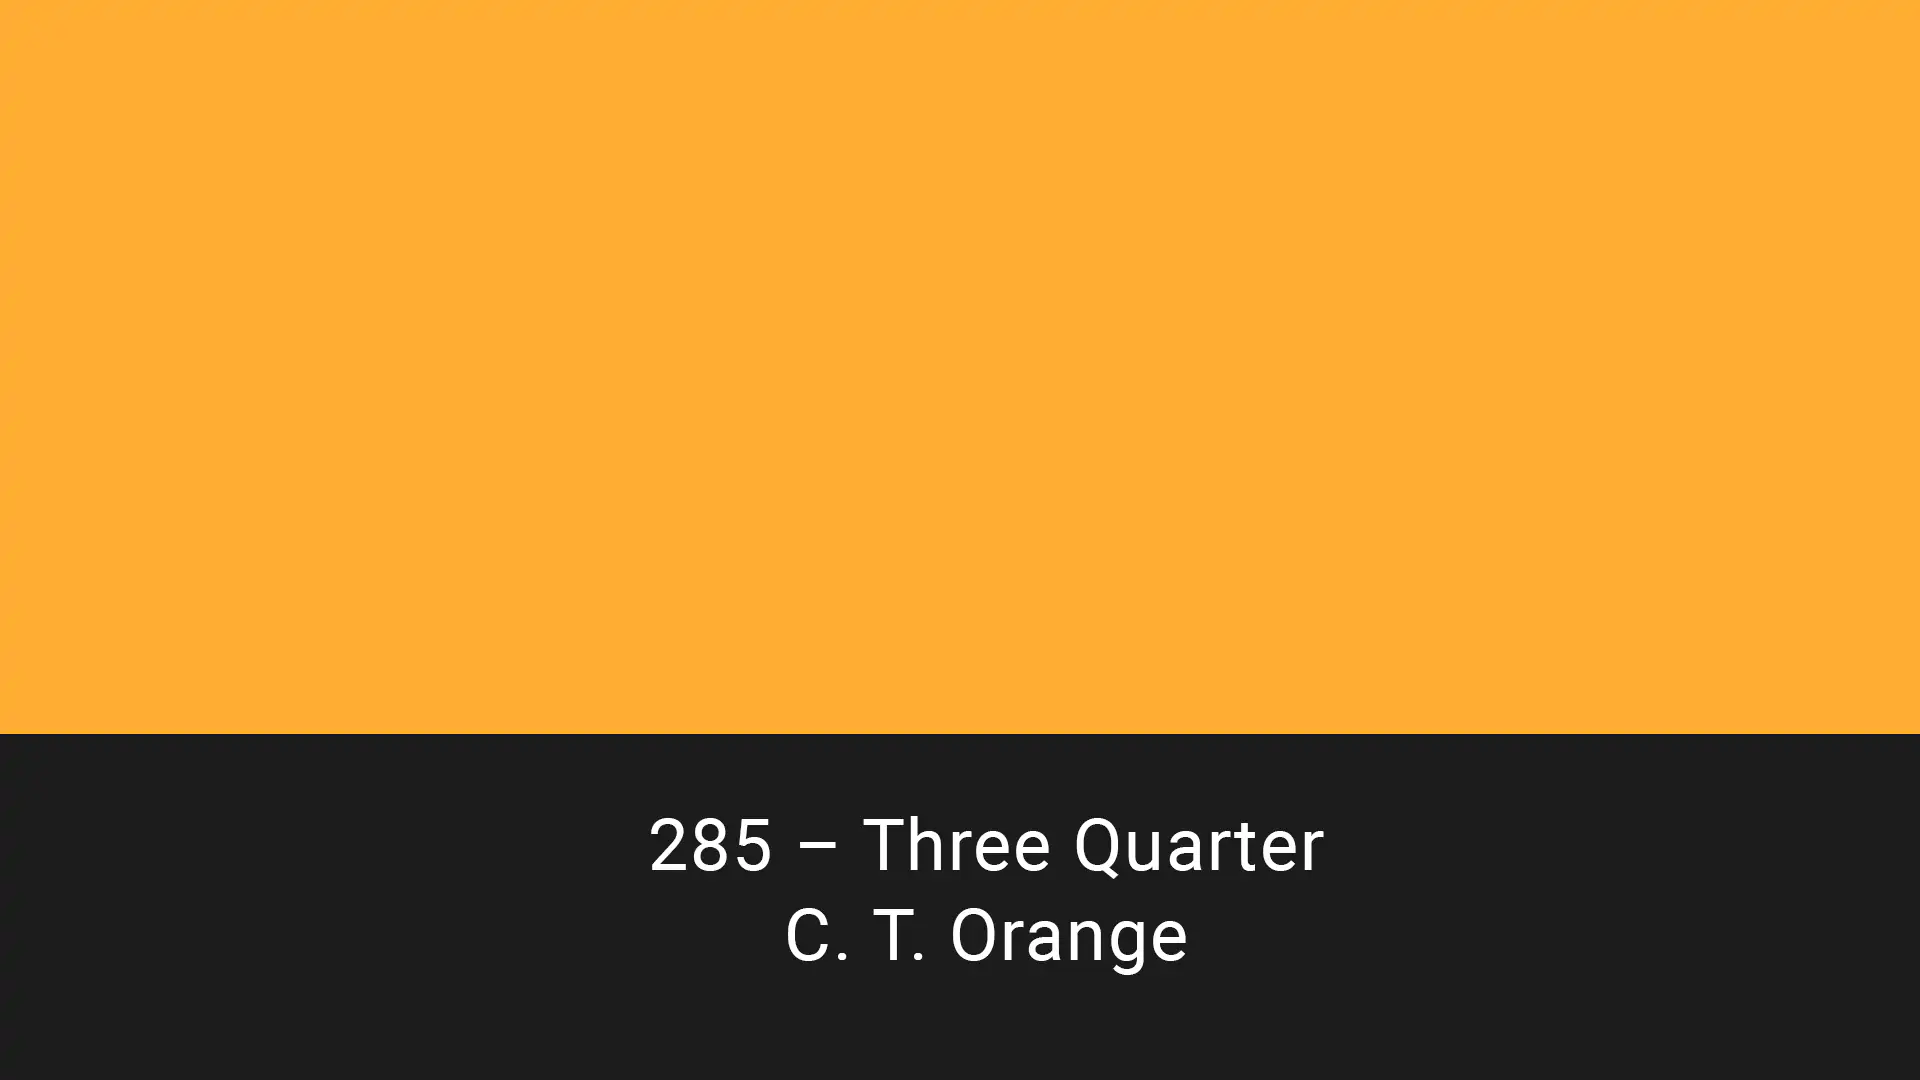 Cotech filters 285 Three Quarter C.T. Orange